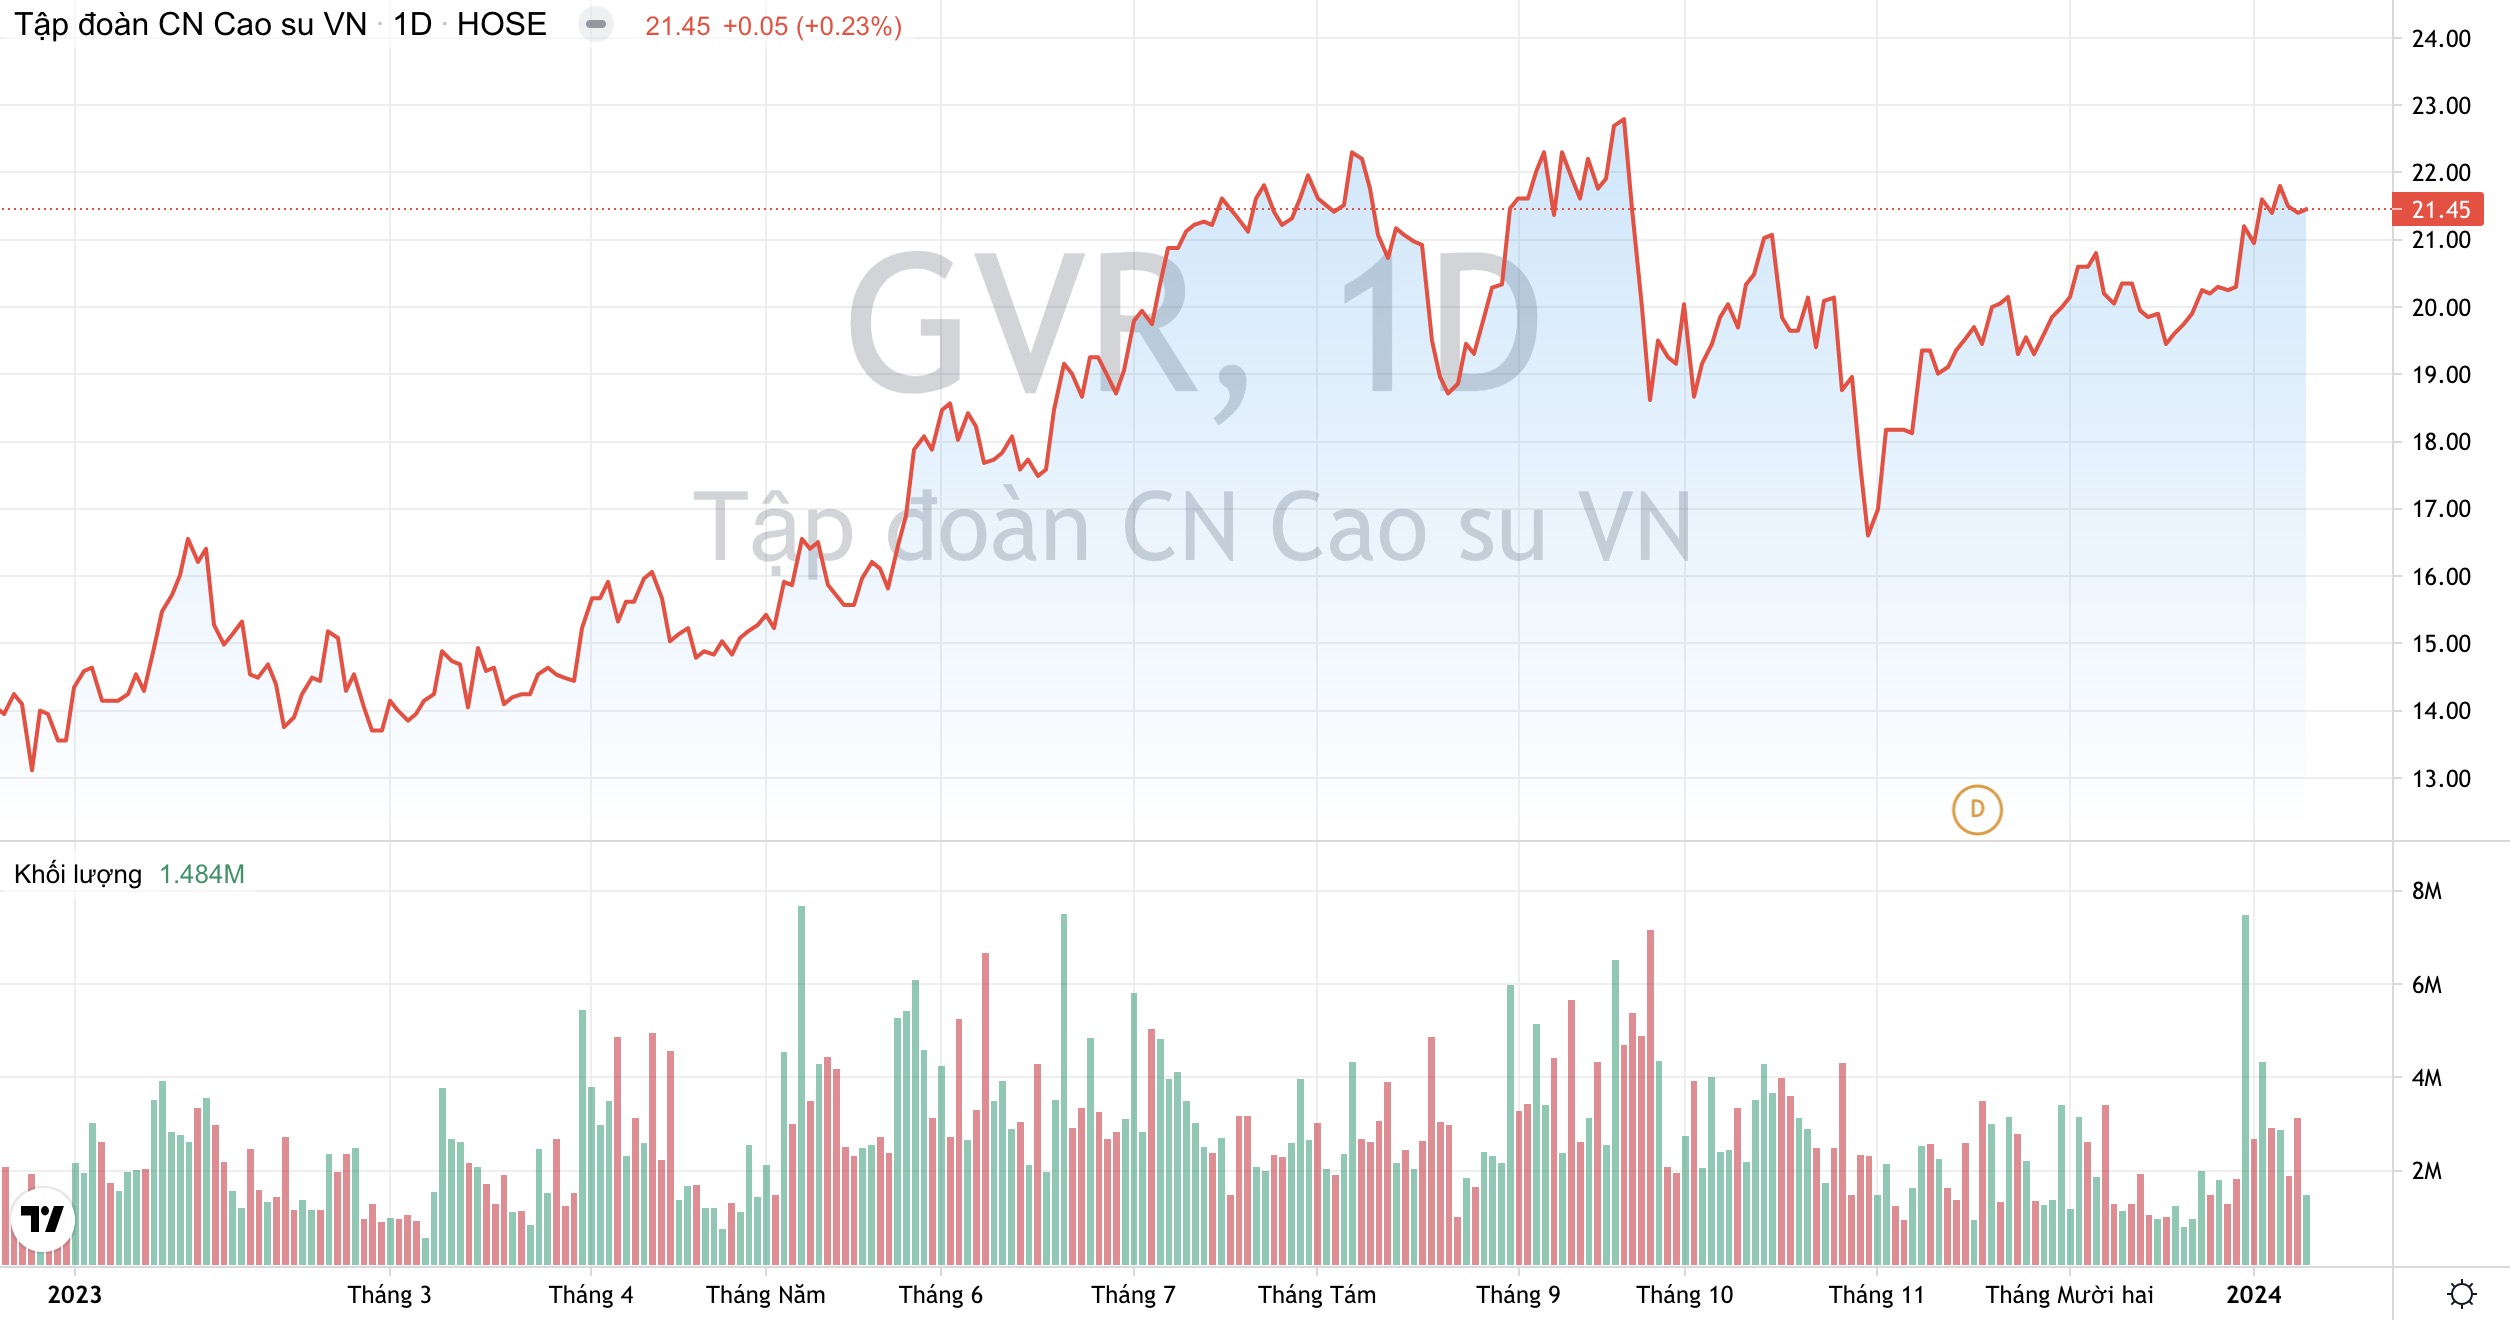 Cao su Việt Nam GVR : Đặt mục tiêu doanh thu gần 25.000 tỷ đồng, kỳ vọng giá mủ cao su phục hồi 2